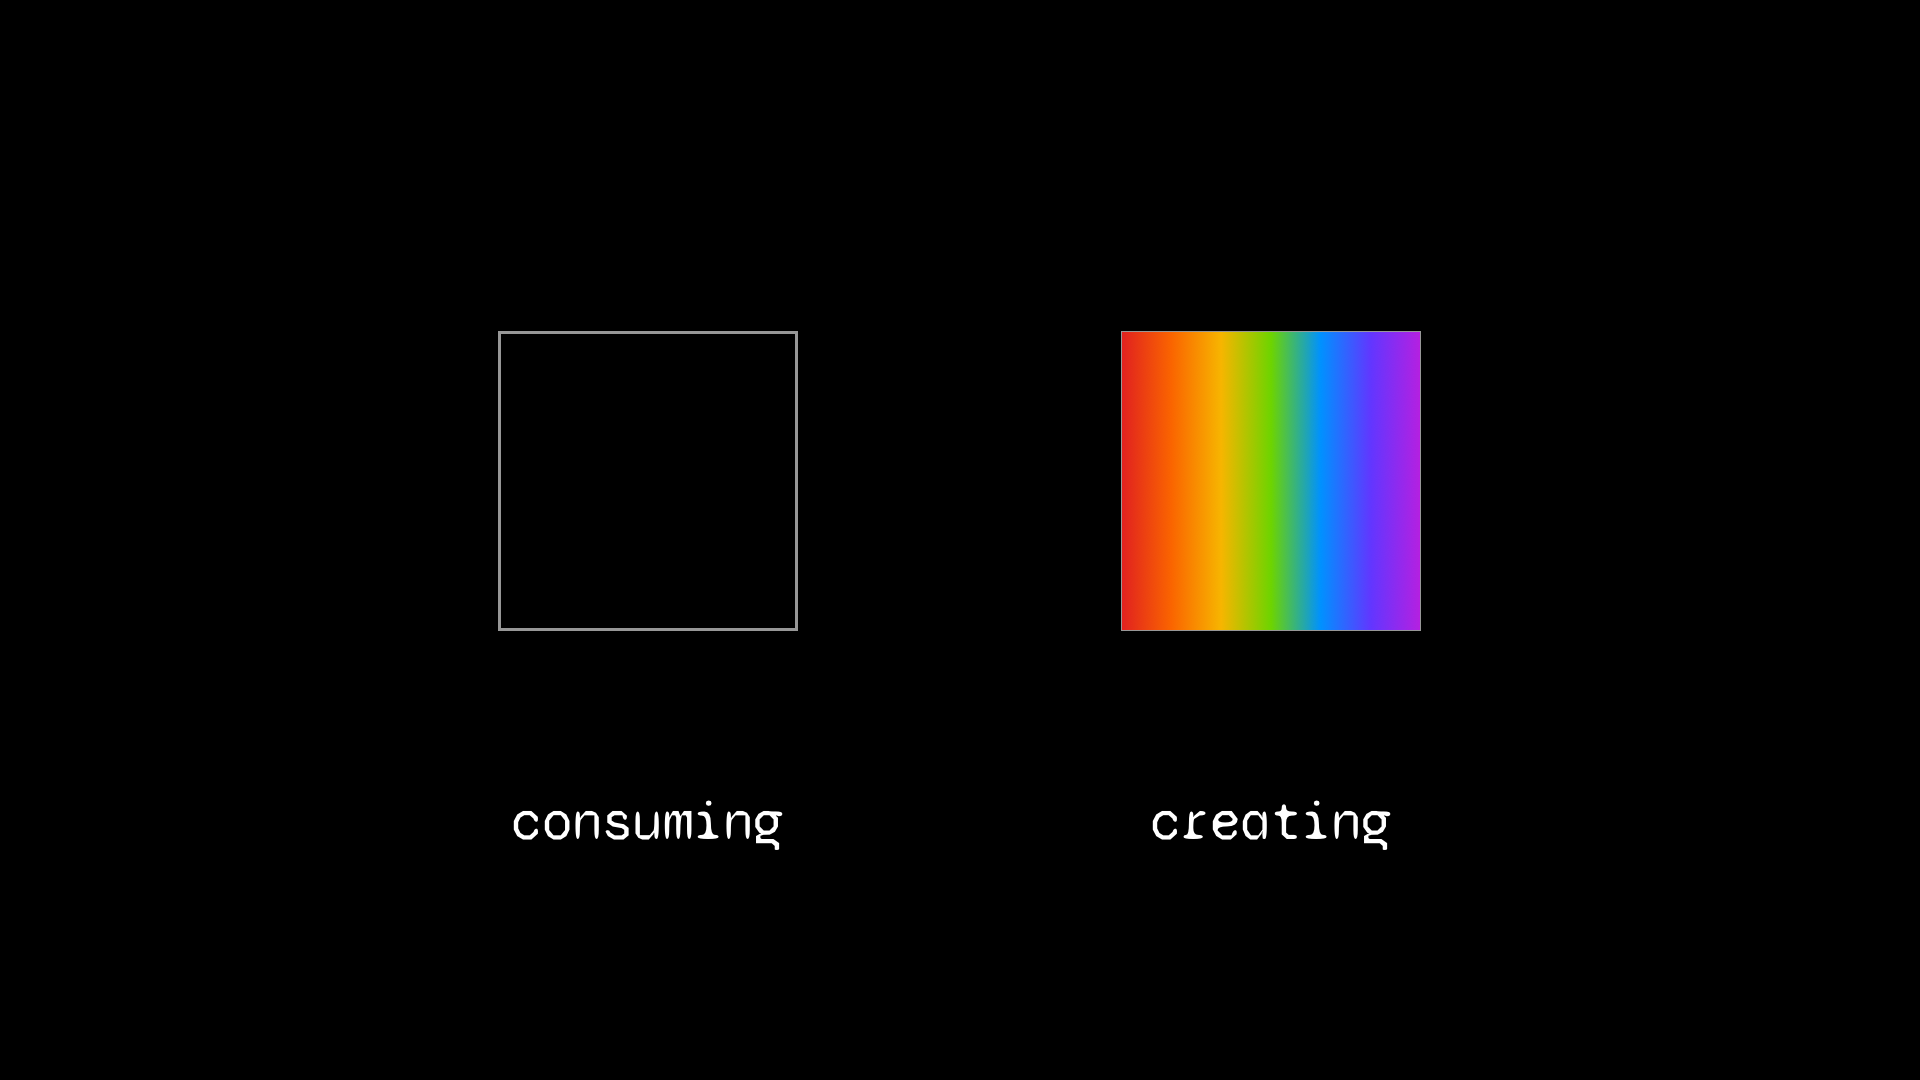 consume vs create image